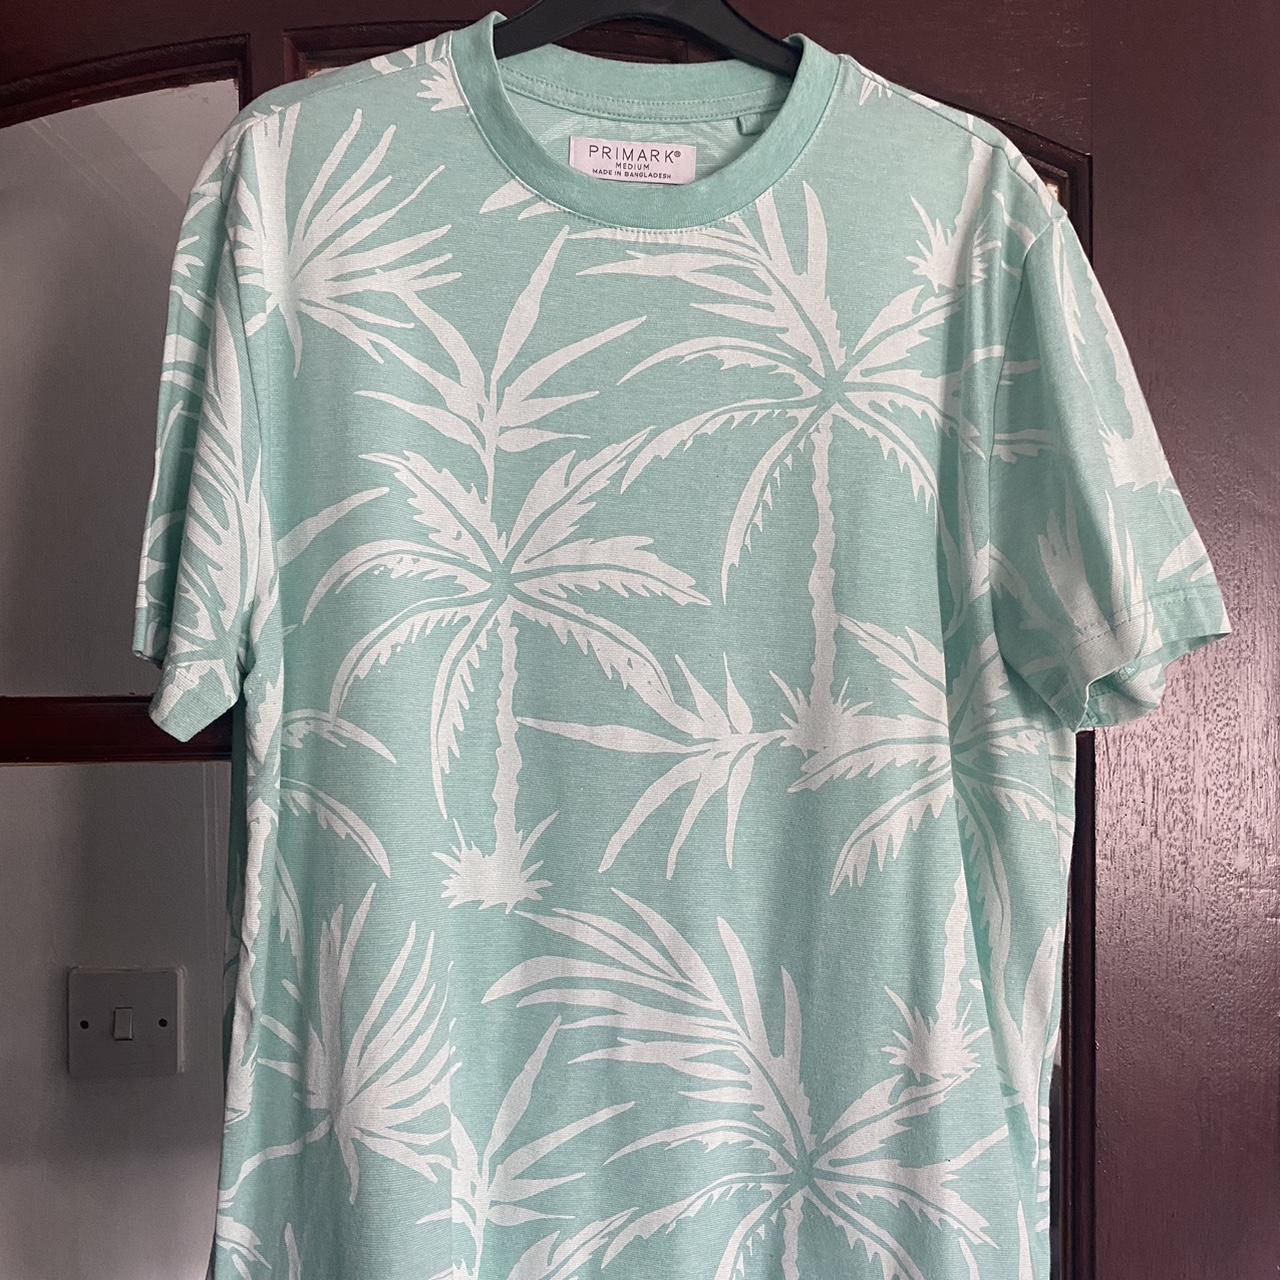 Primark Men’s Green Hawaiian T-Shirt Worn a few... - Depop